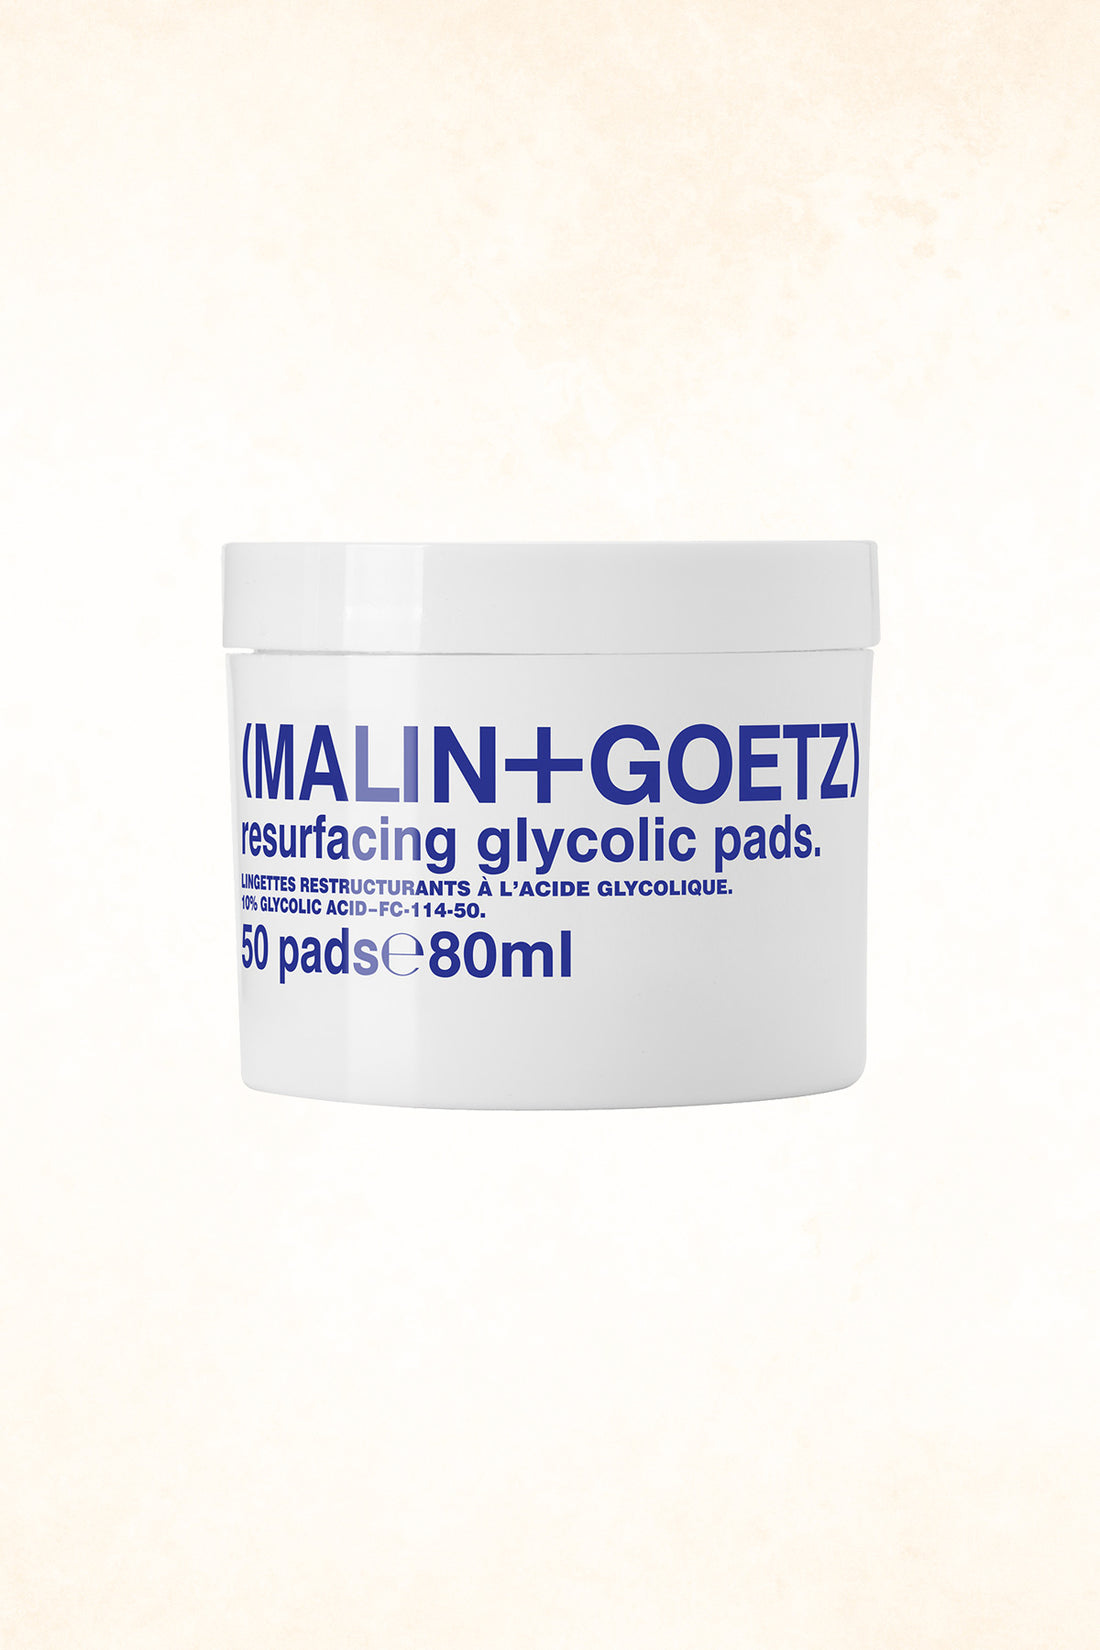 Malin+Goetz – Resurfacing Glycolic Pads 50 pads (10% Glycolic Acid)